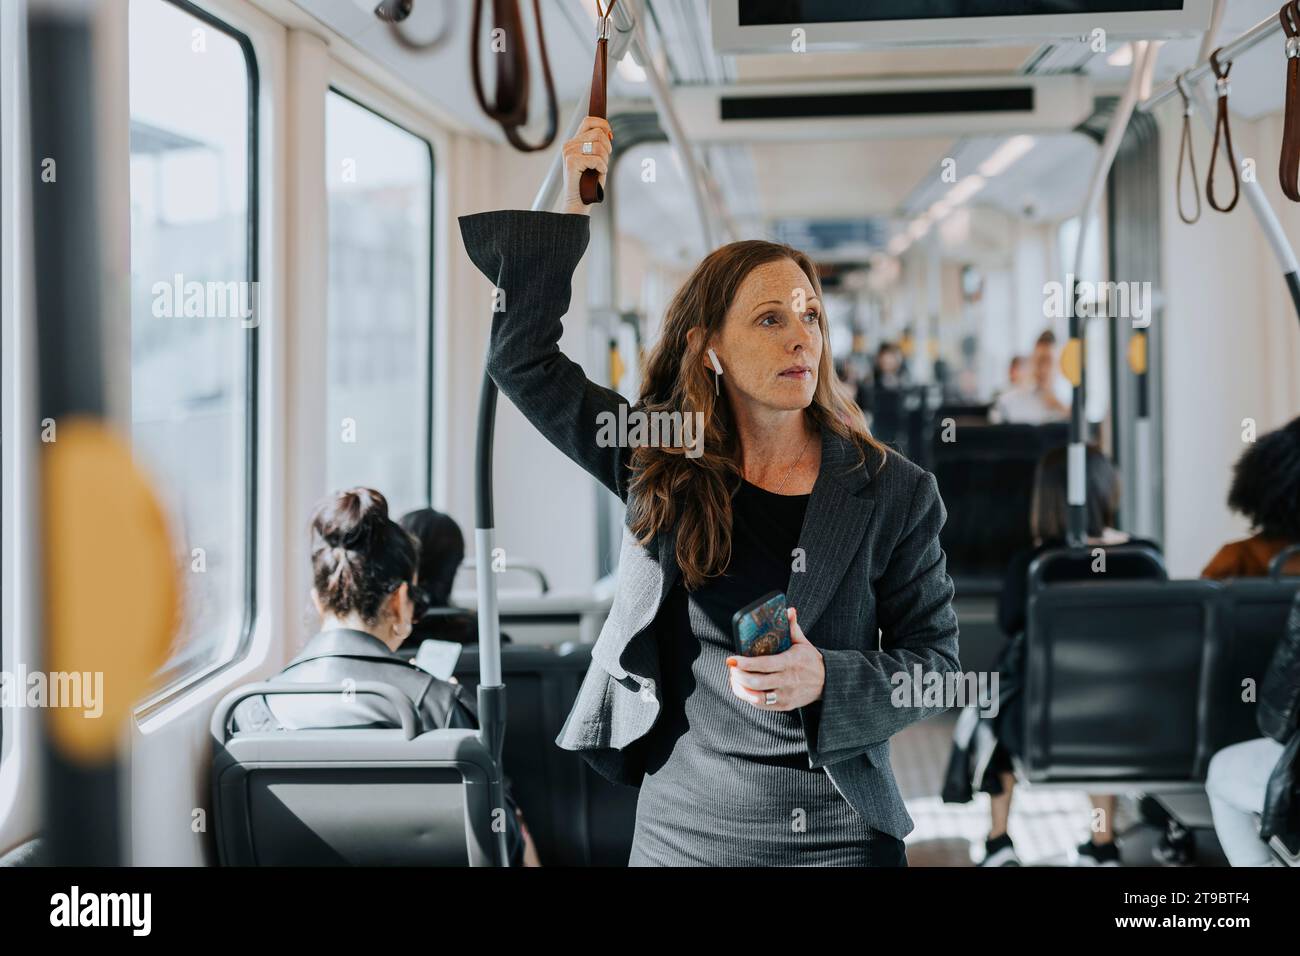 Weibliche Pendlerin, die ihr Smartphone im Zug hält Stockfoto